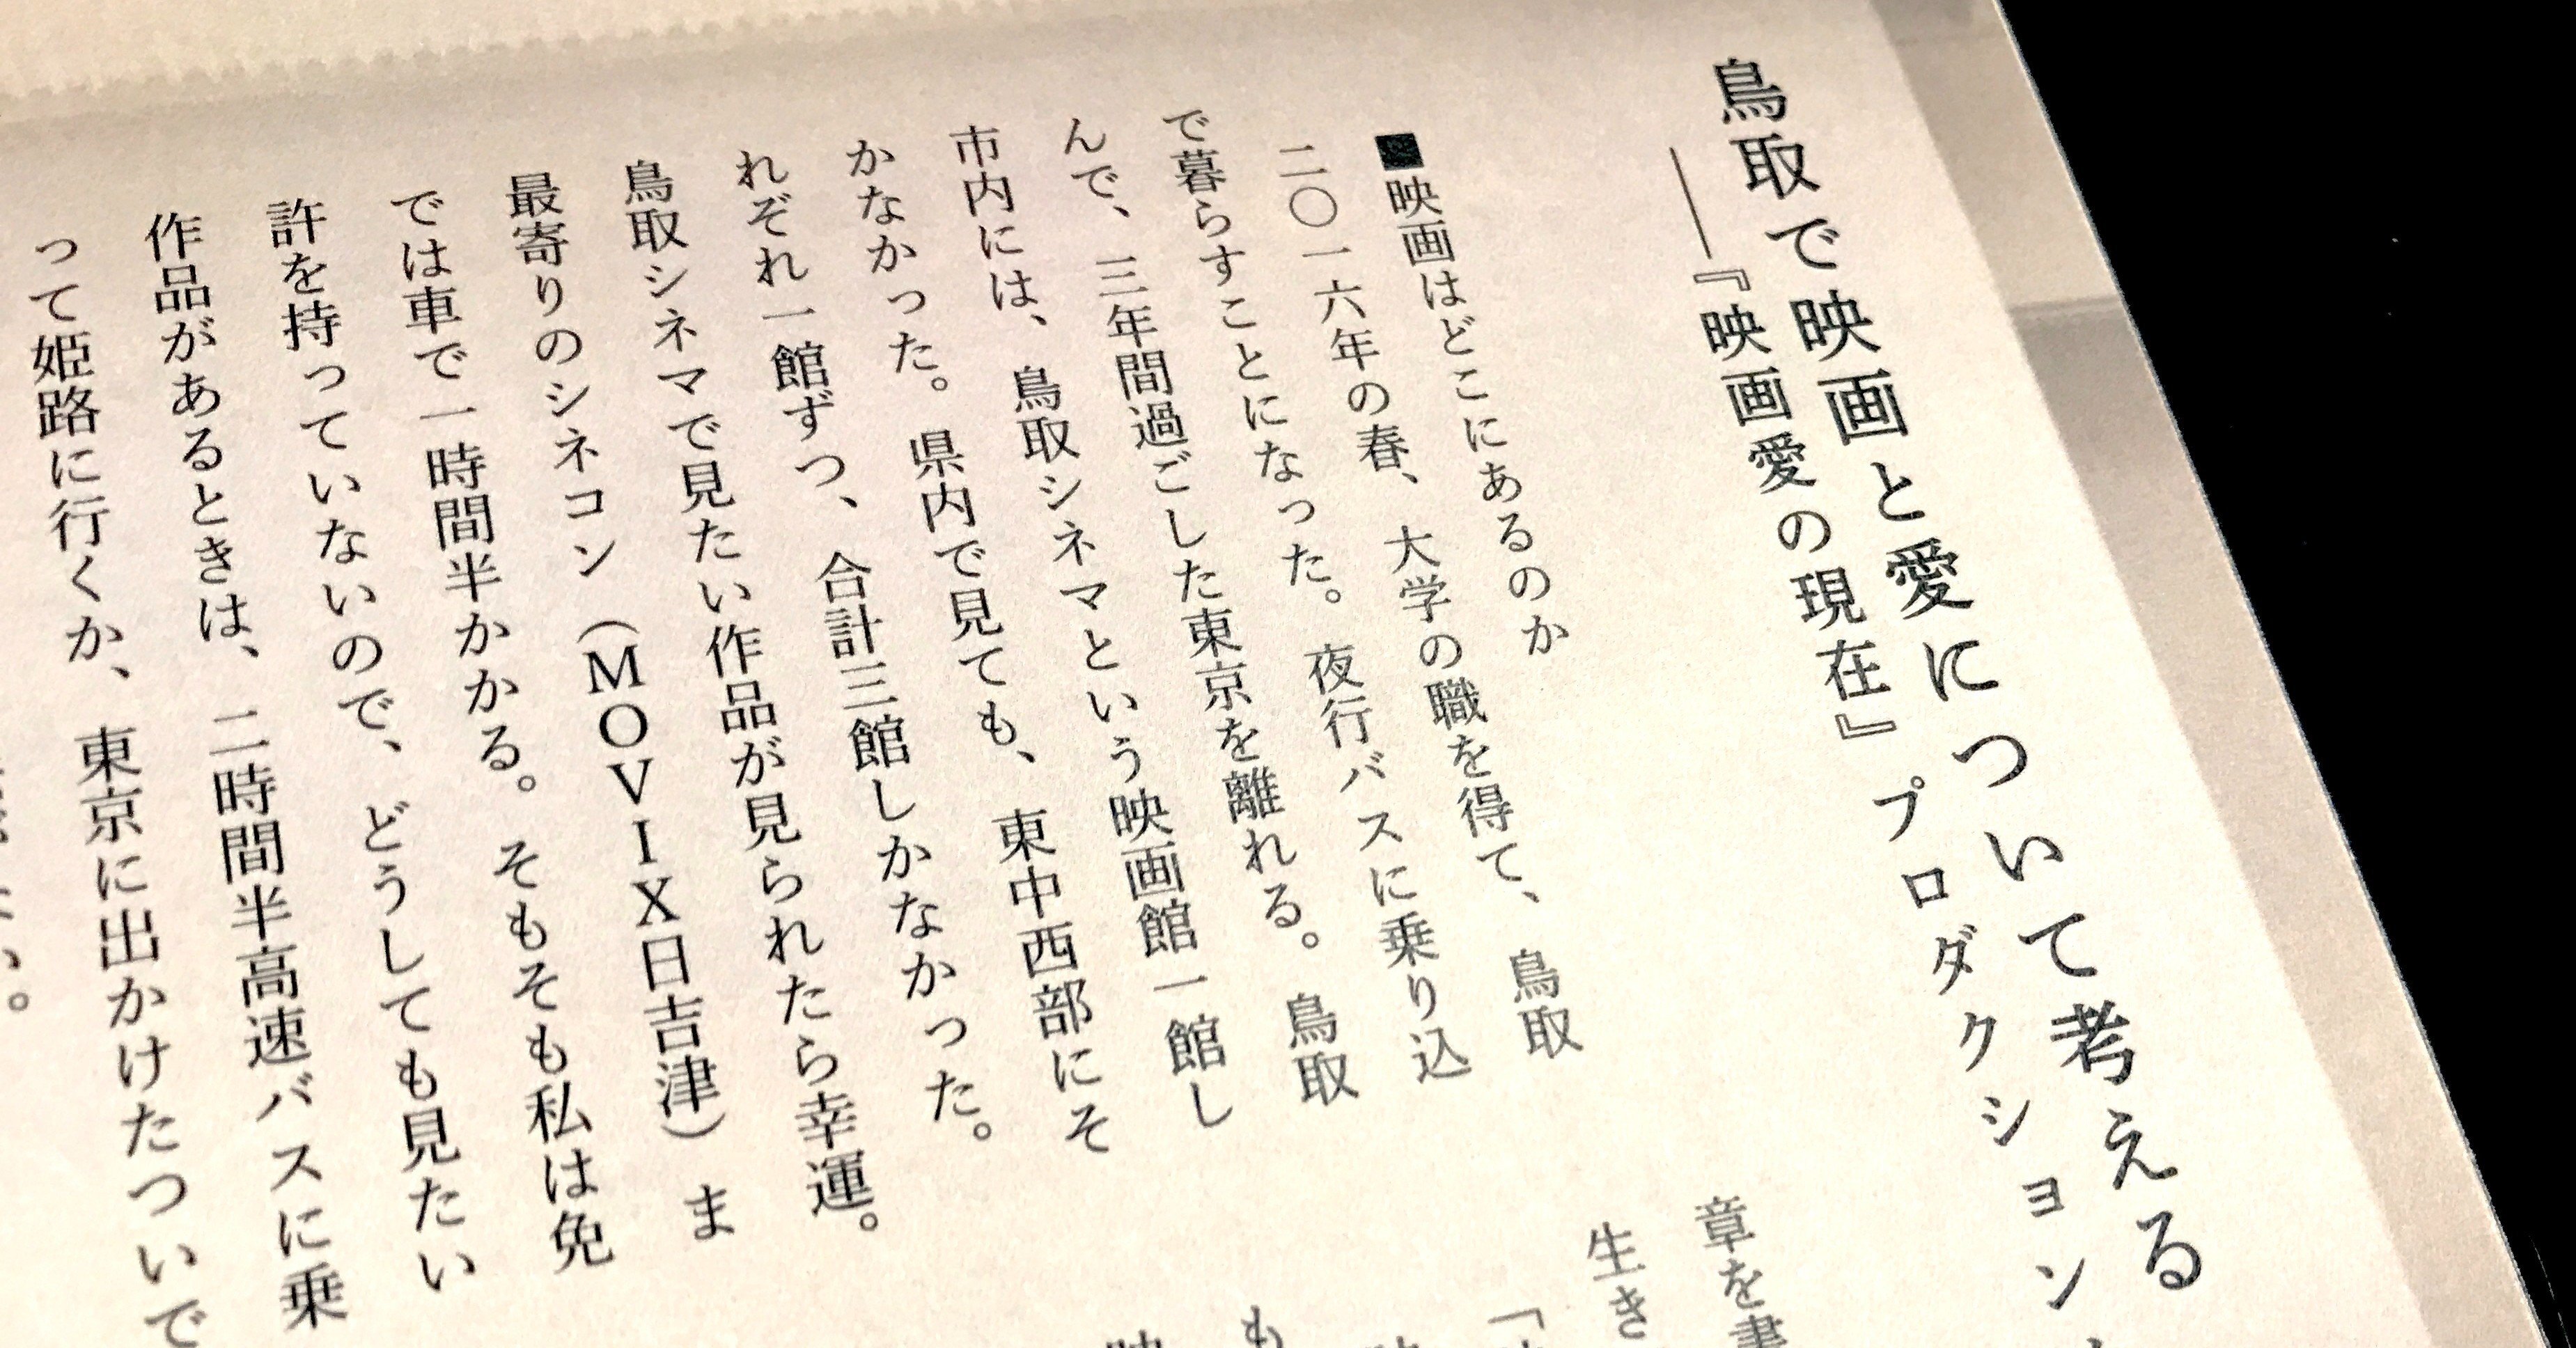 鳥取で映画と愛について考える 映画愛の現在 プロダクションノート ささきゆうすけ Note